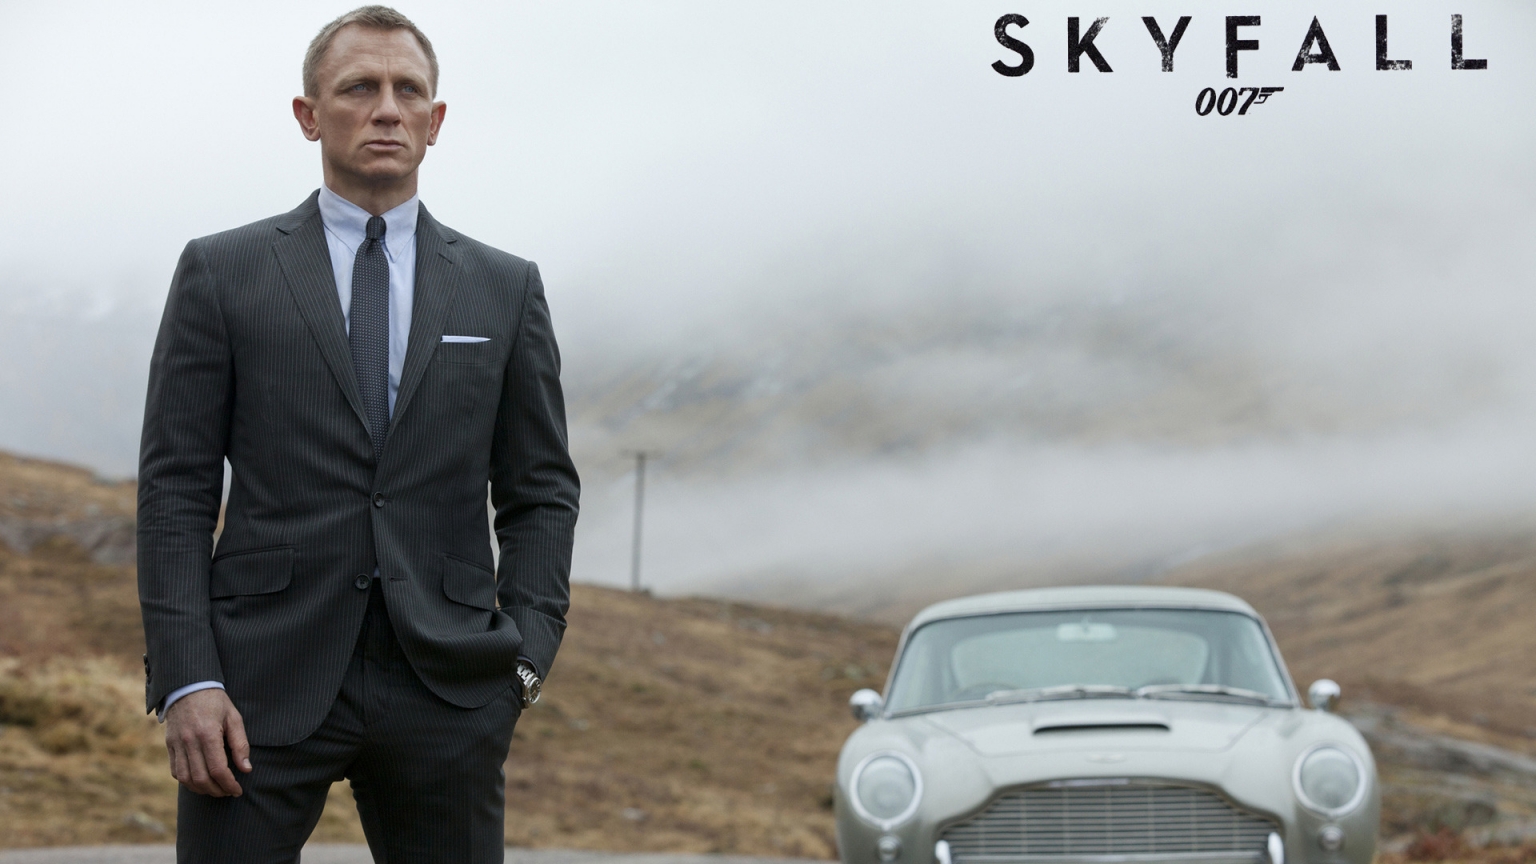 James Bond Skyfall for 1536 x 864 HDTV resolution